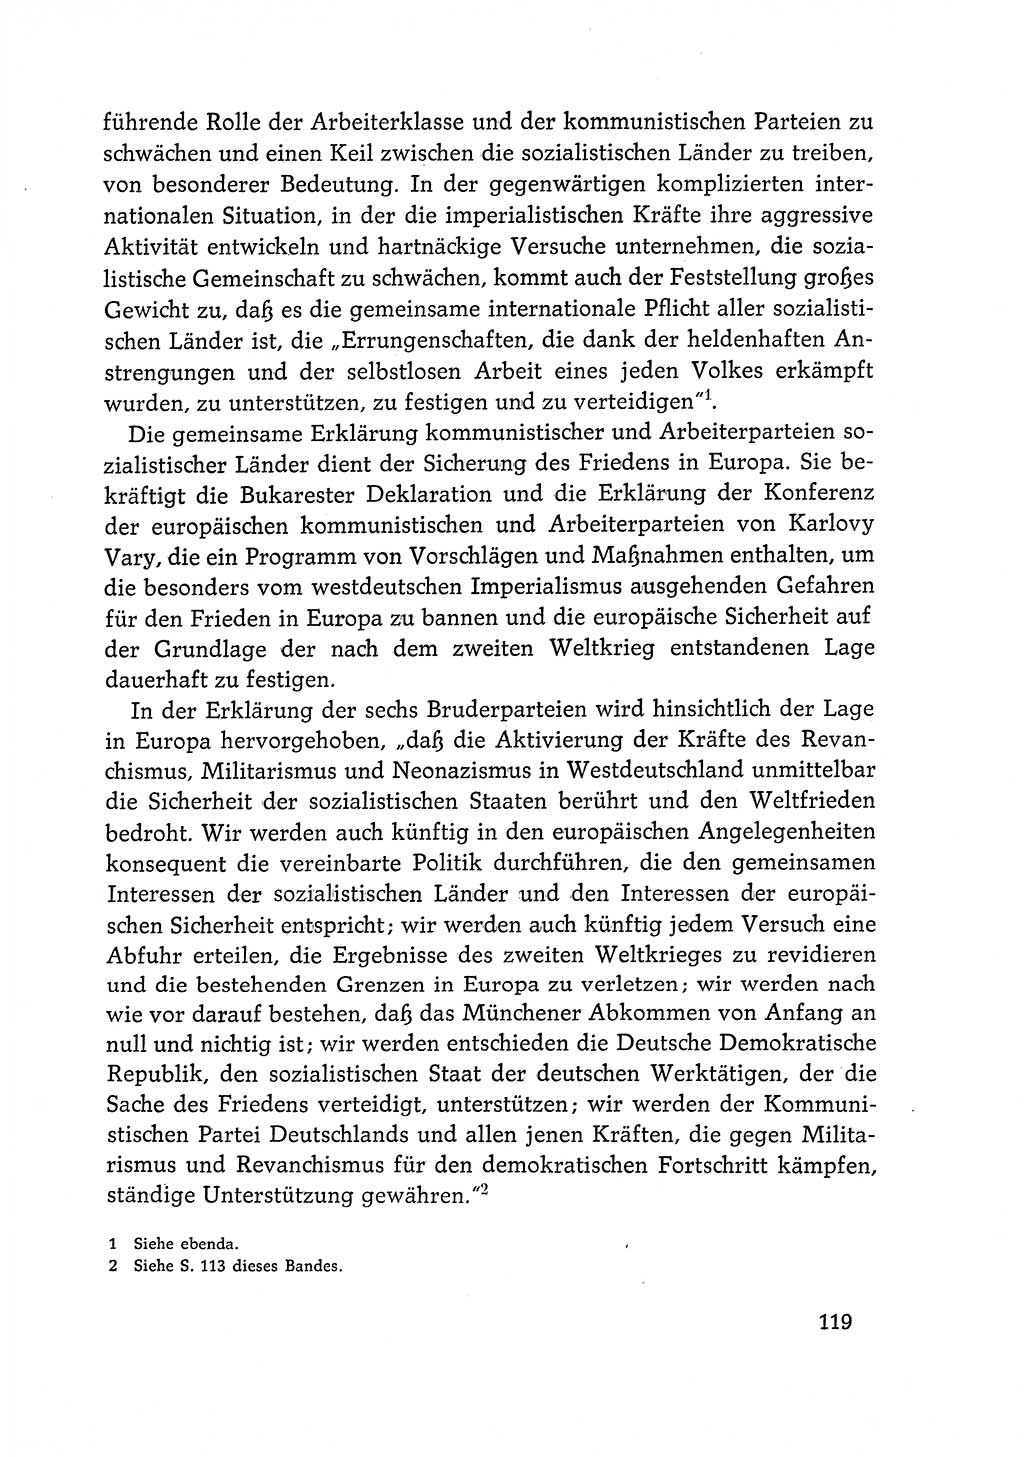 Dokumente der Sozialistischen Einheitspartei Deutschlands (SED) [Deutsche Demokratische Republik (DDR)] 1968-1969, Seite 119 (Dok. SED DDR 1968-1969, S. 119)